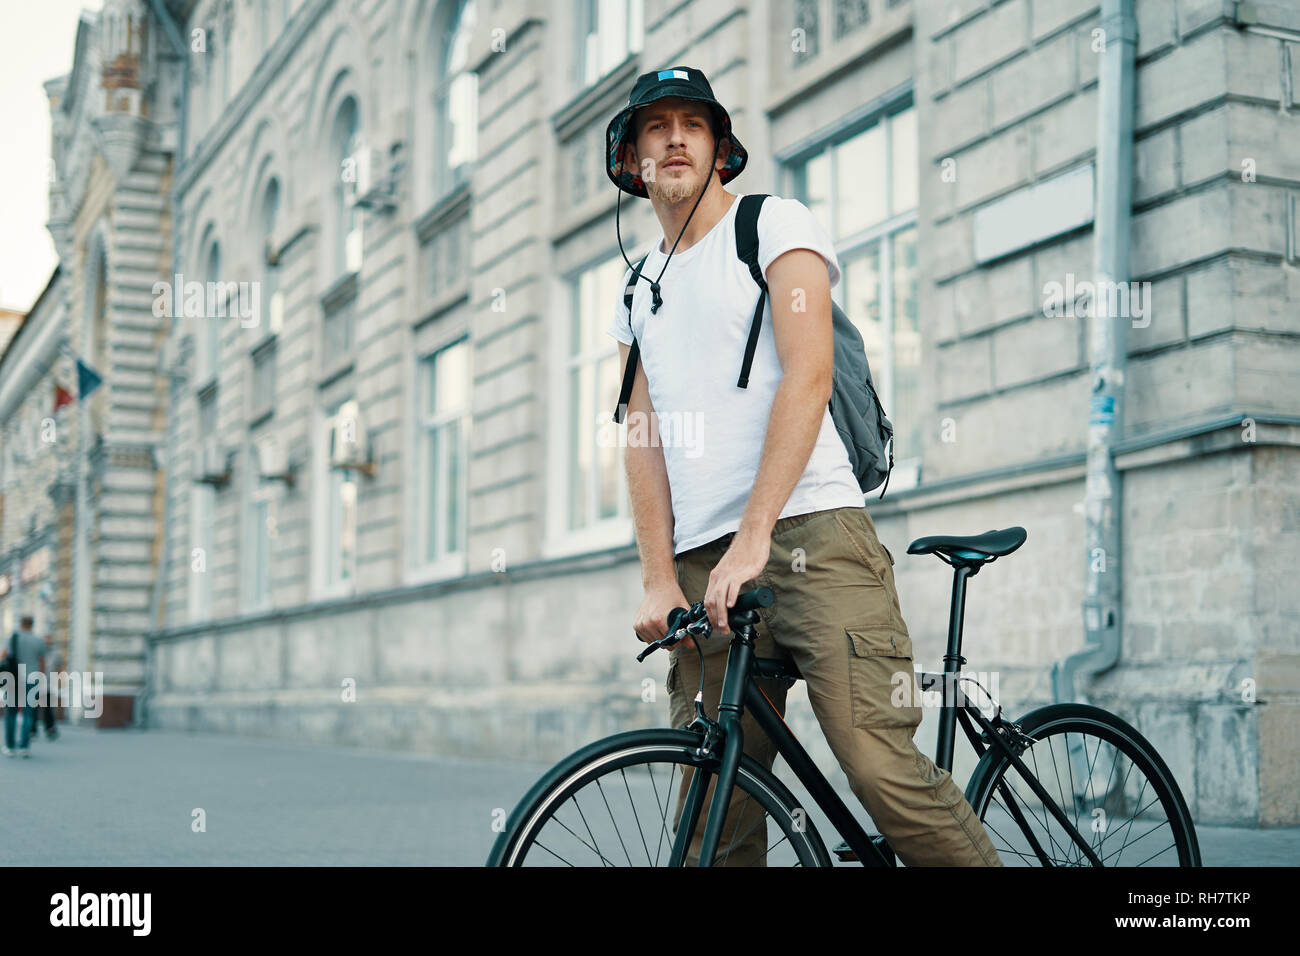 Ein Mann mit dem Fahrrad in einem alten europäischen Stadt im Freien. Lifestyle, ökologischen Verkehr, Personen Konzept. Stockfoto